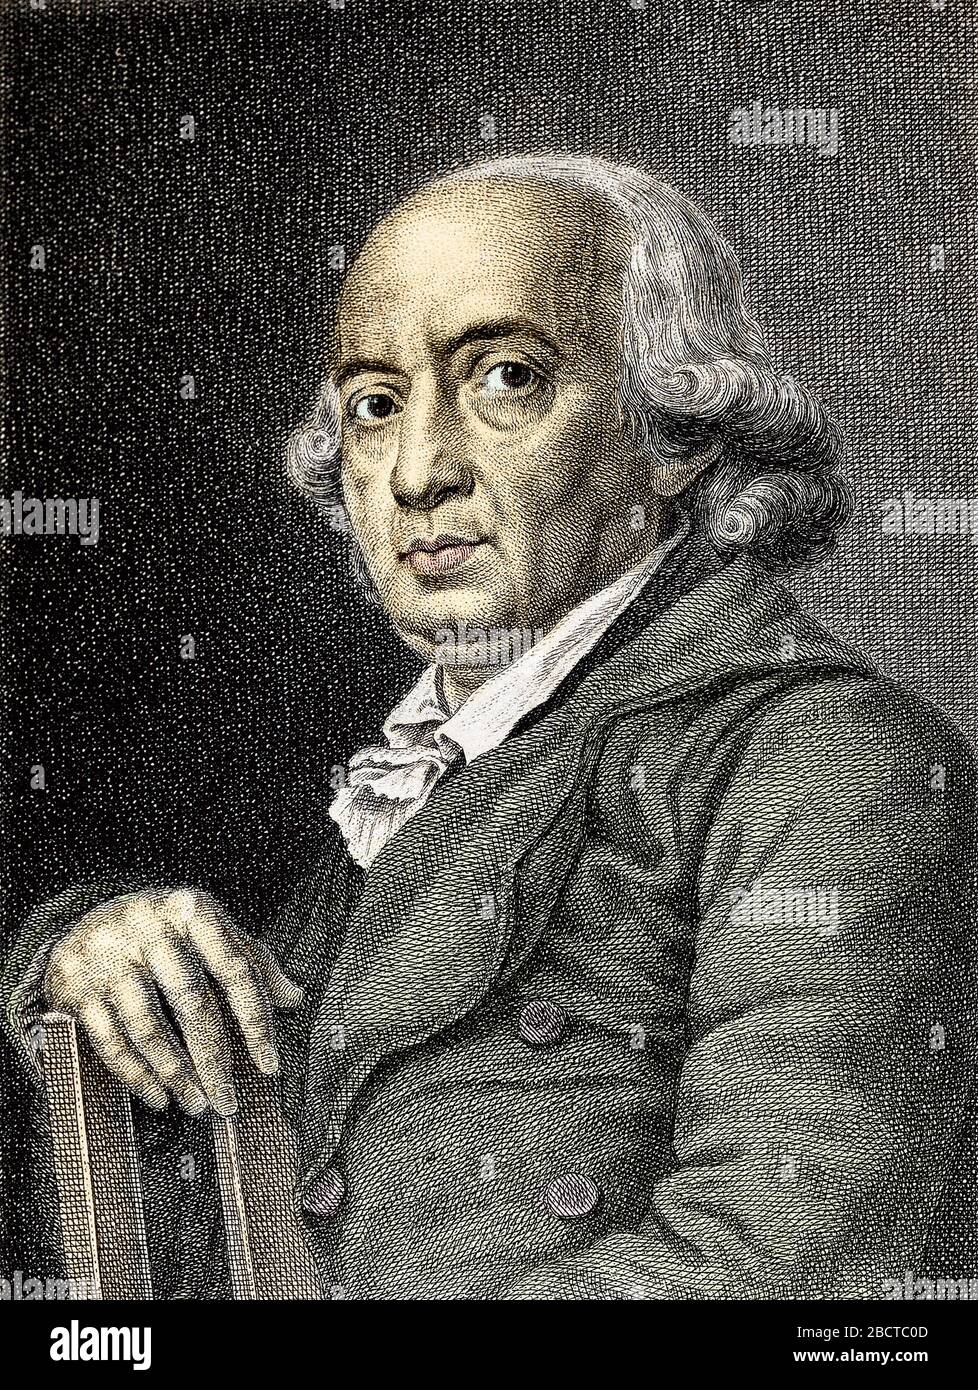 Ritratto di Johann Gottfried von Herder poete et philosophe allemand - Ritratto di scrittore e filosofo tedesco Johann Gottfried Herder (1744-1803) - Foto Stock